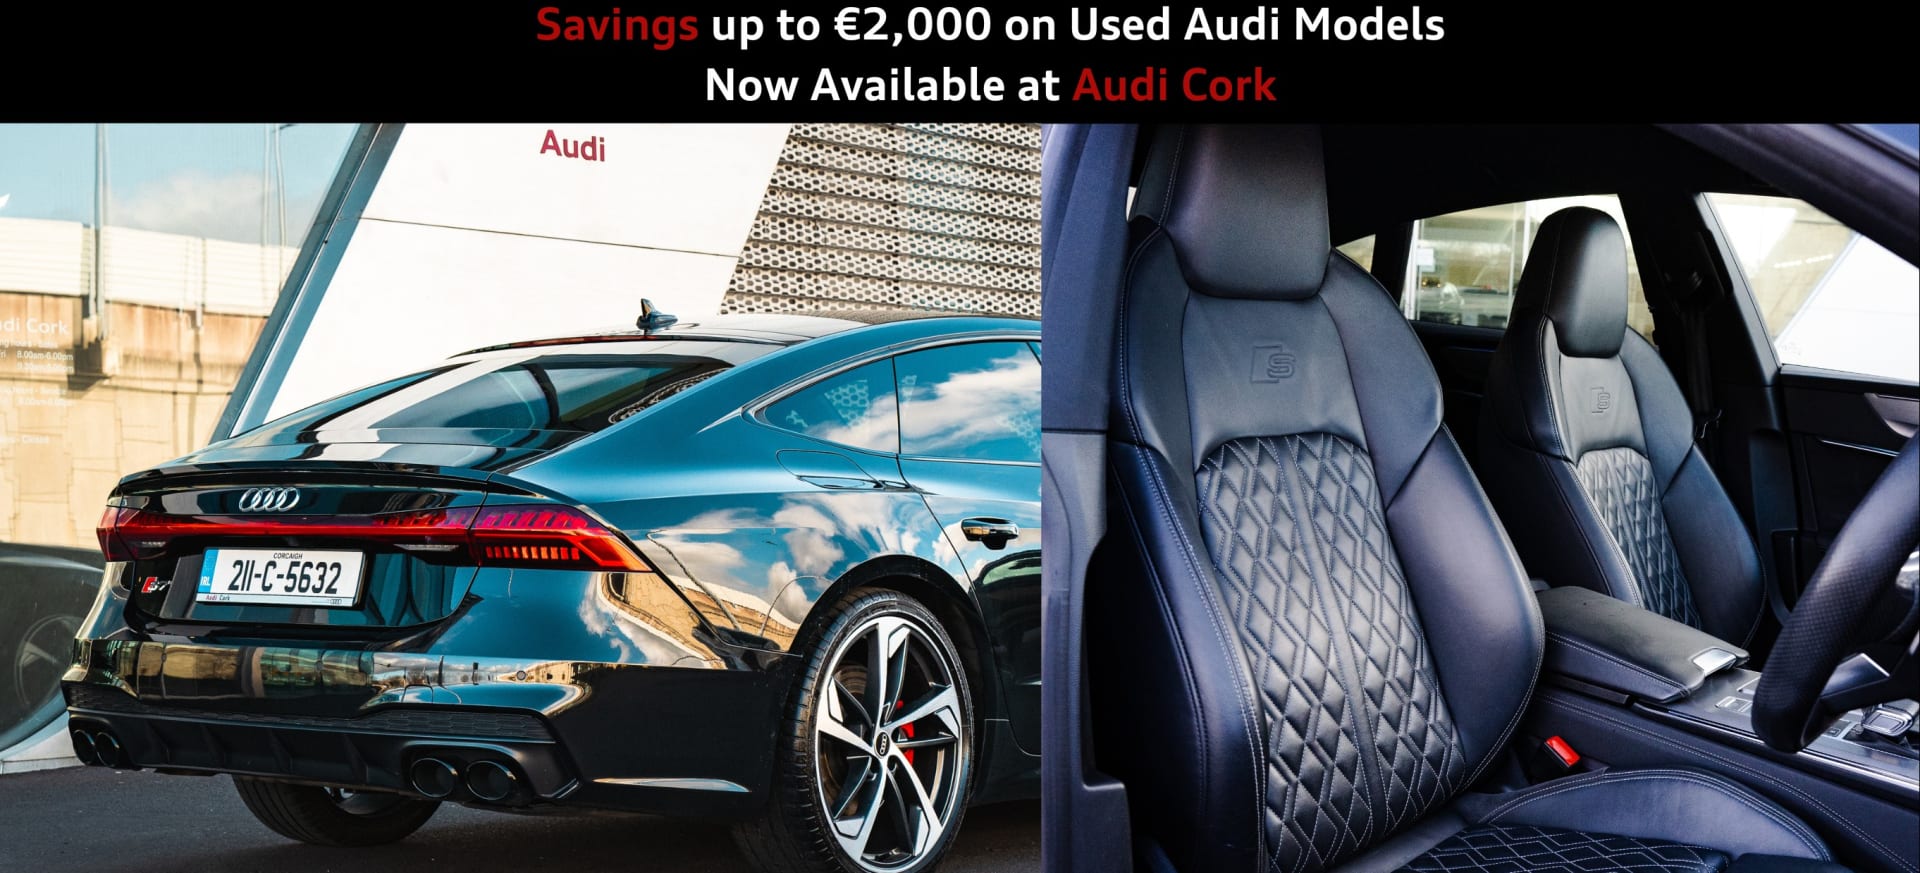 Savings of €2,000 at Audi Cork